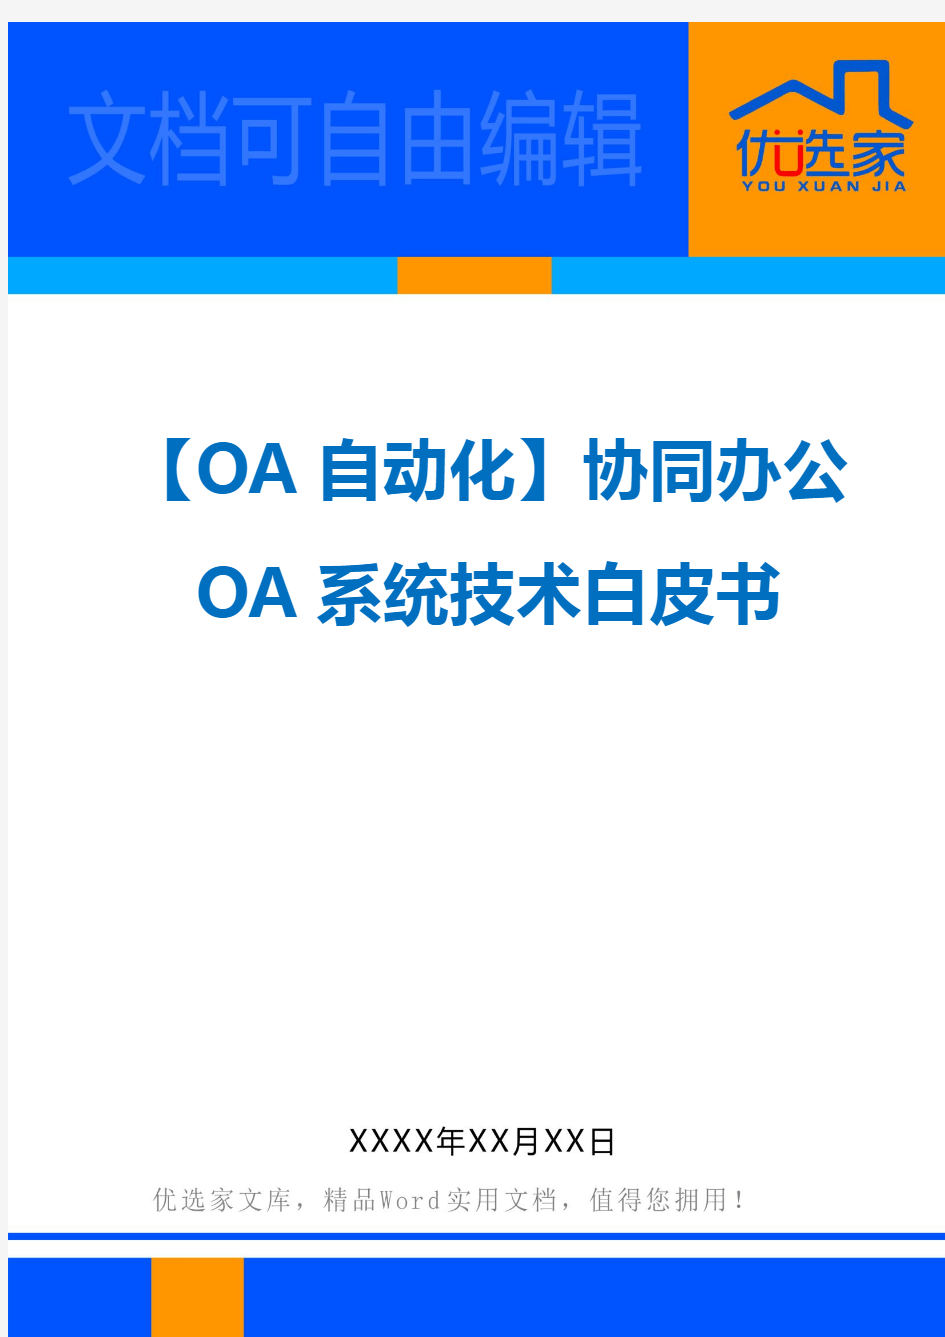 【OA自动化】协同办公OA系统技术白皮书